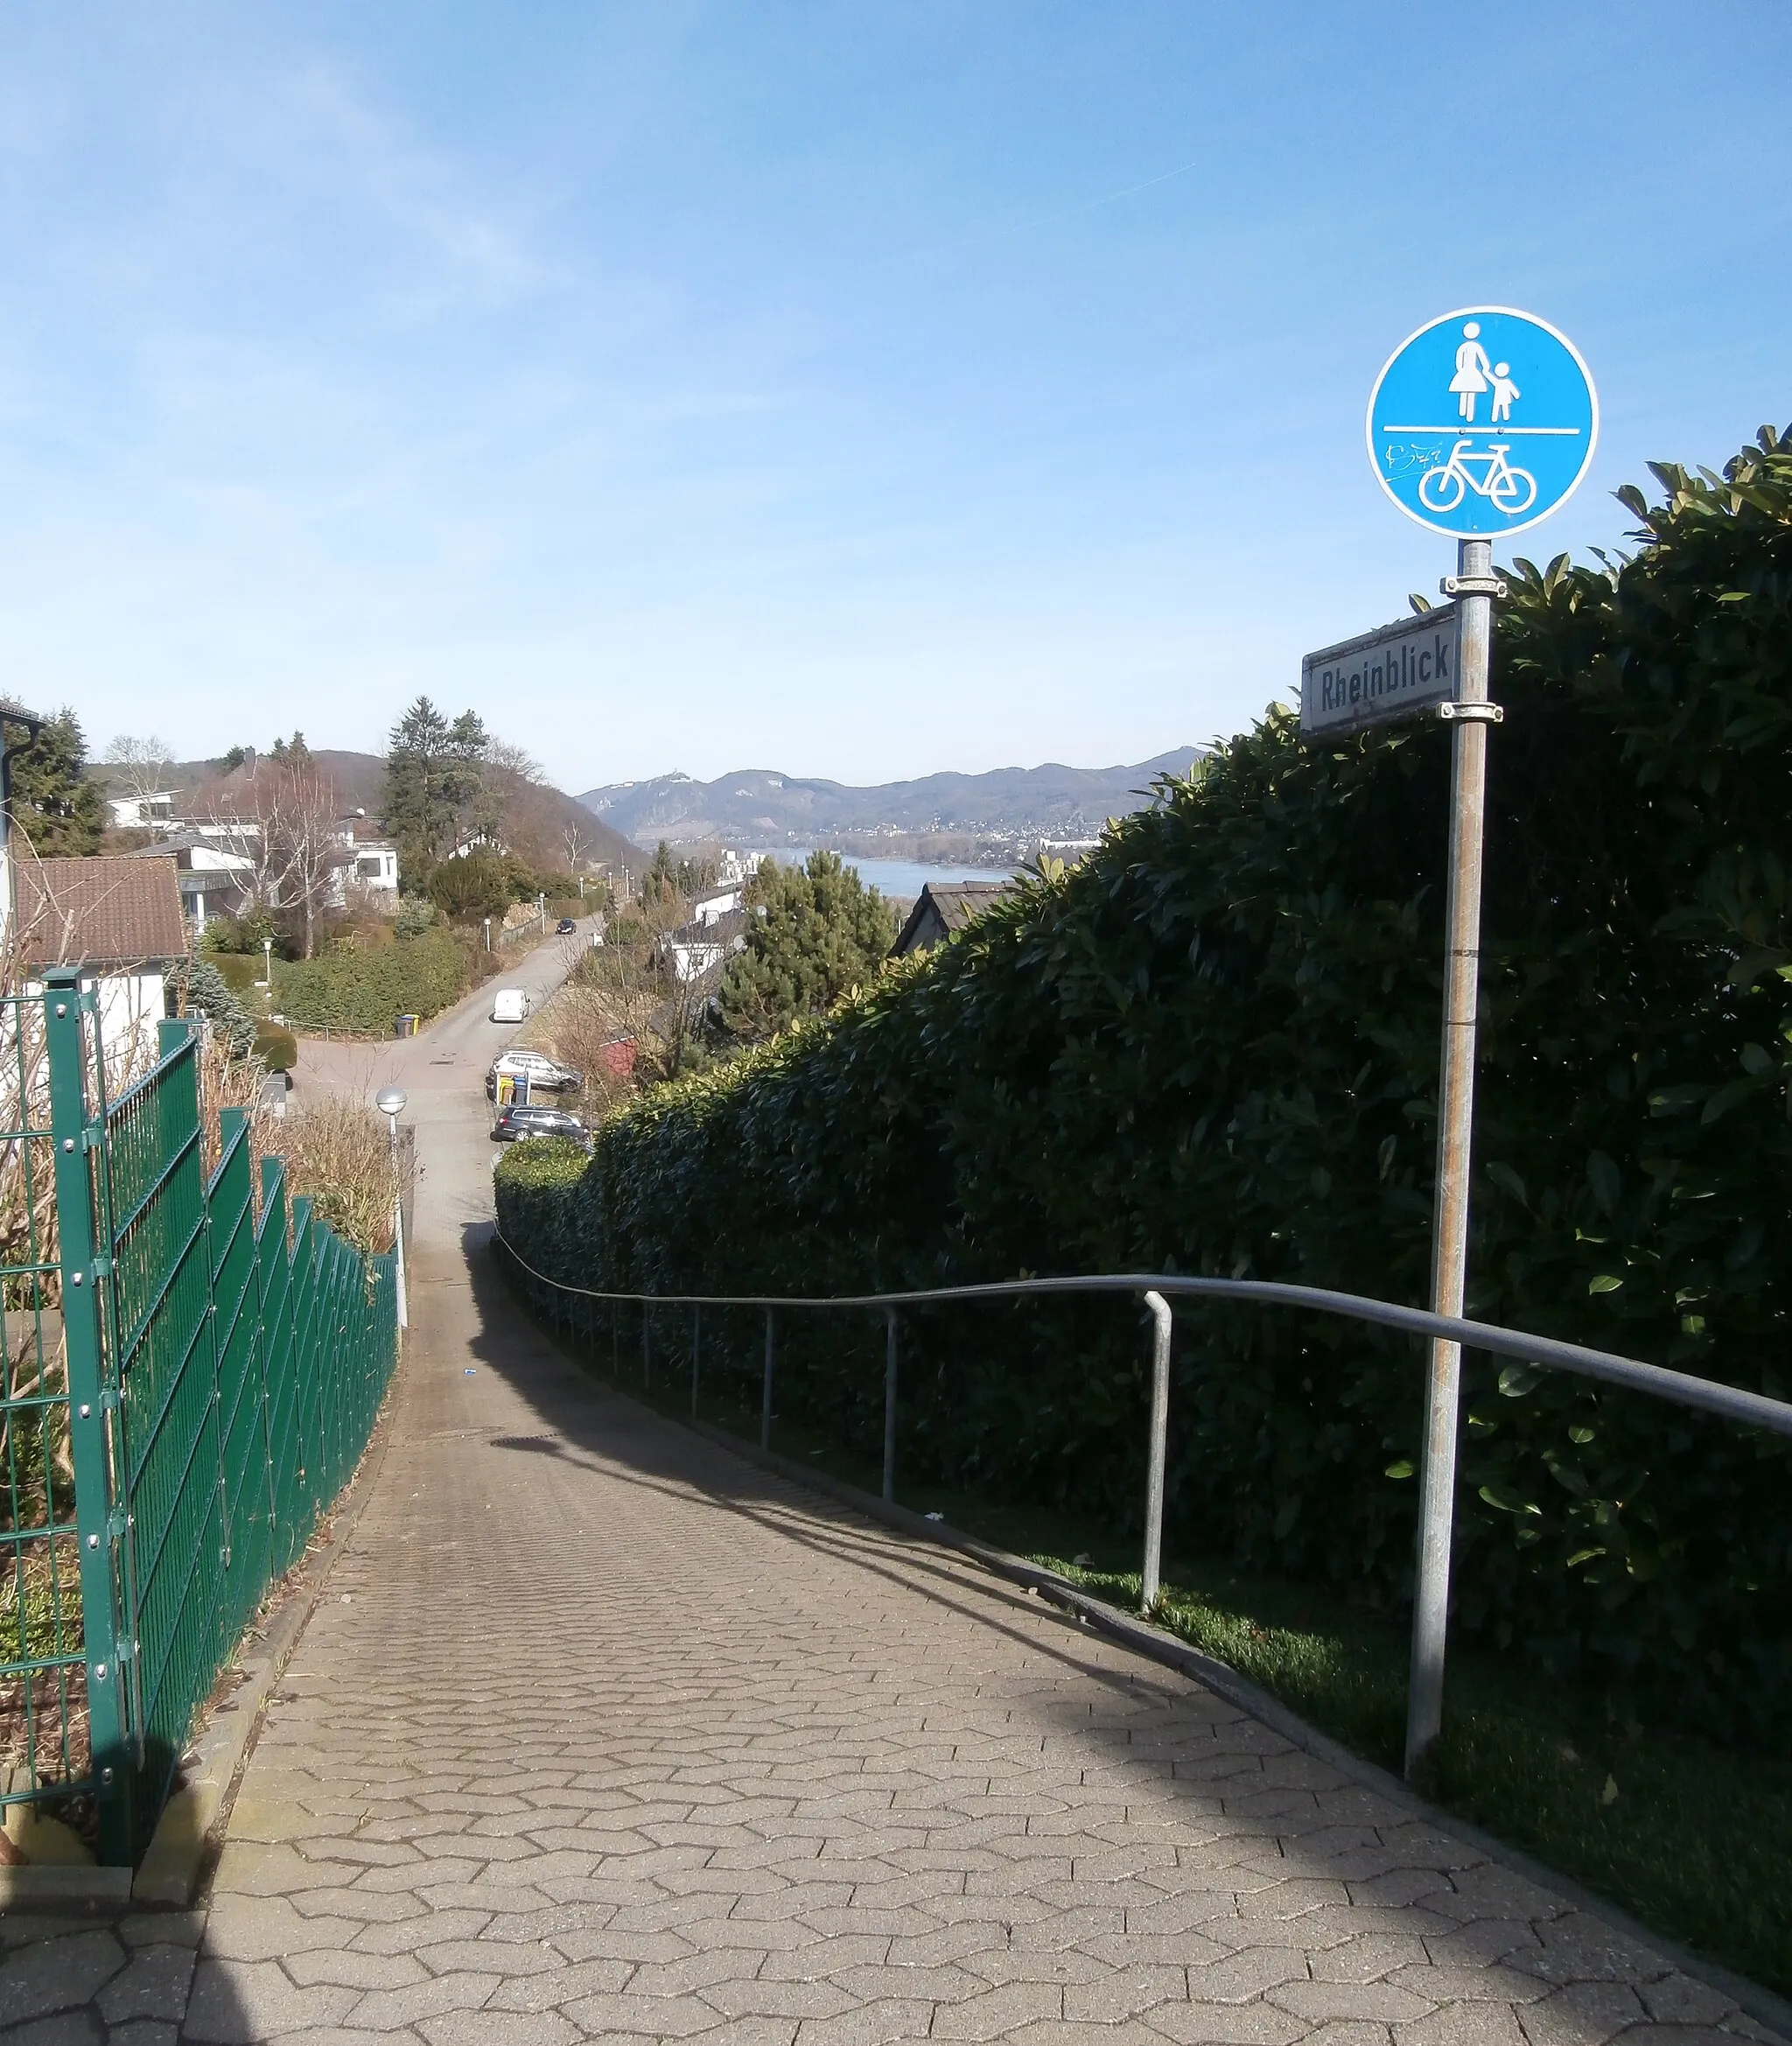 Photo showing: Beginn der Straße Rheinblick, Oberwinter-Birgel